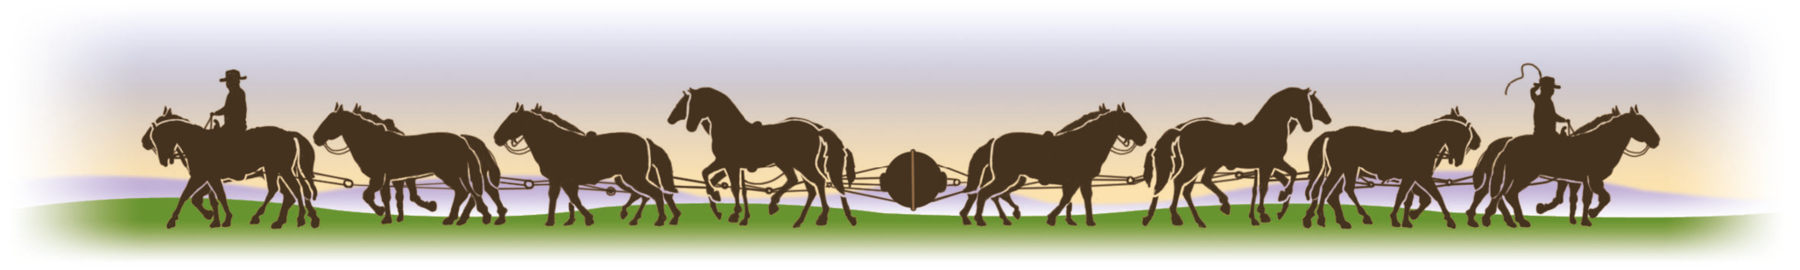 Ilustração. Um objeto circular no meio, preso por cordas. As cordas estão presas em duas fileiras de cavalos, cada uma está indo em um sentido: uma para a esquerda e uma para a direita. Há o contorno de uma pessoa na frente de cada uma das filas de cavalos.